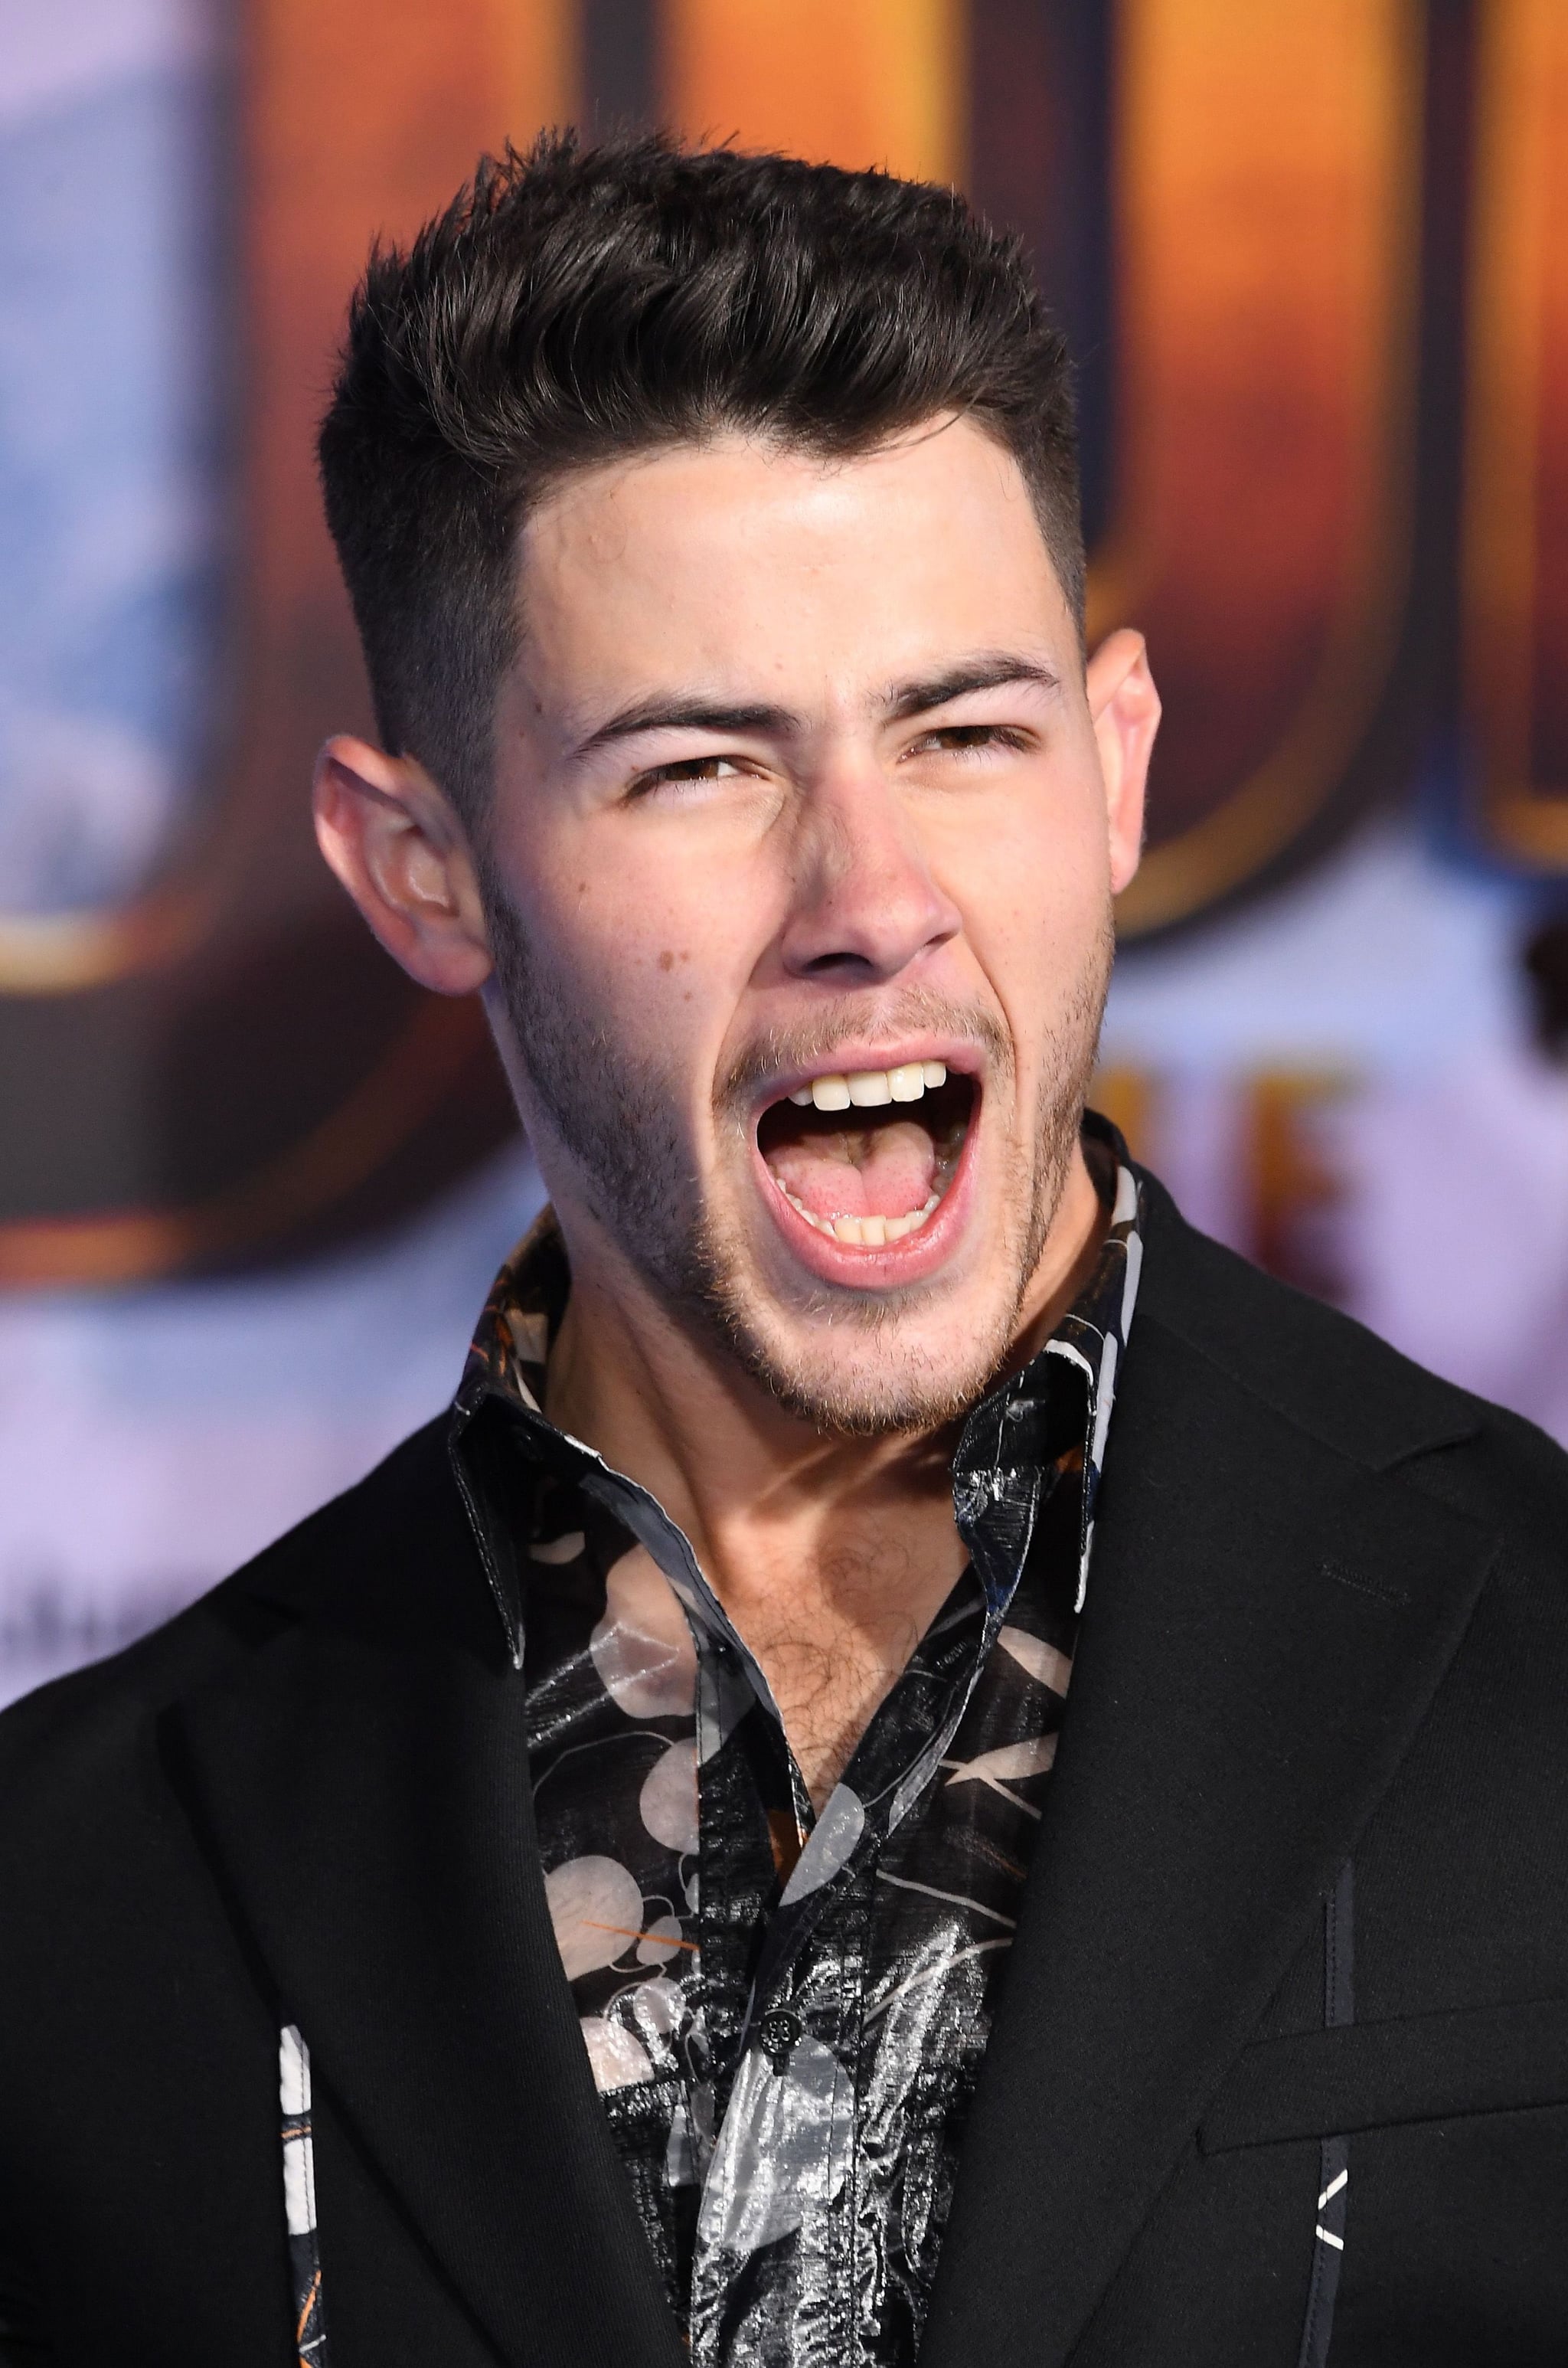 Nick Jonas Short Wavy Hairstyle - TheHairStyler.com